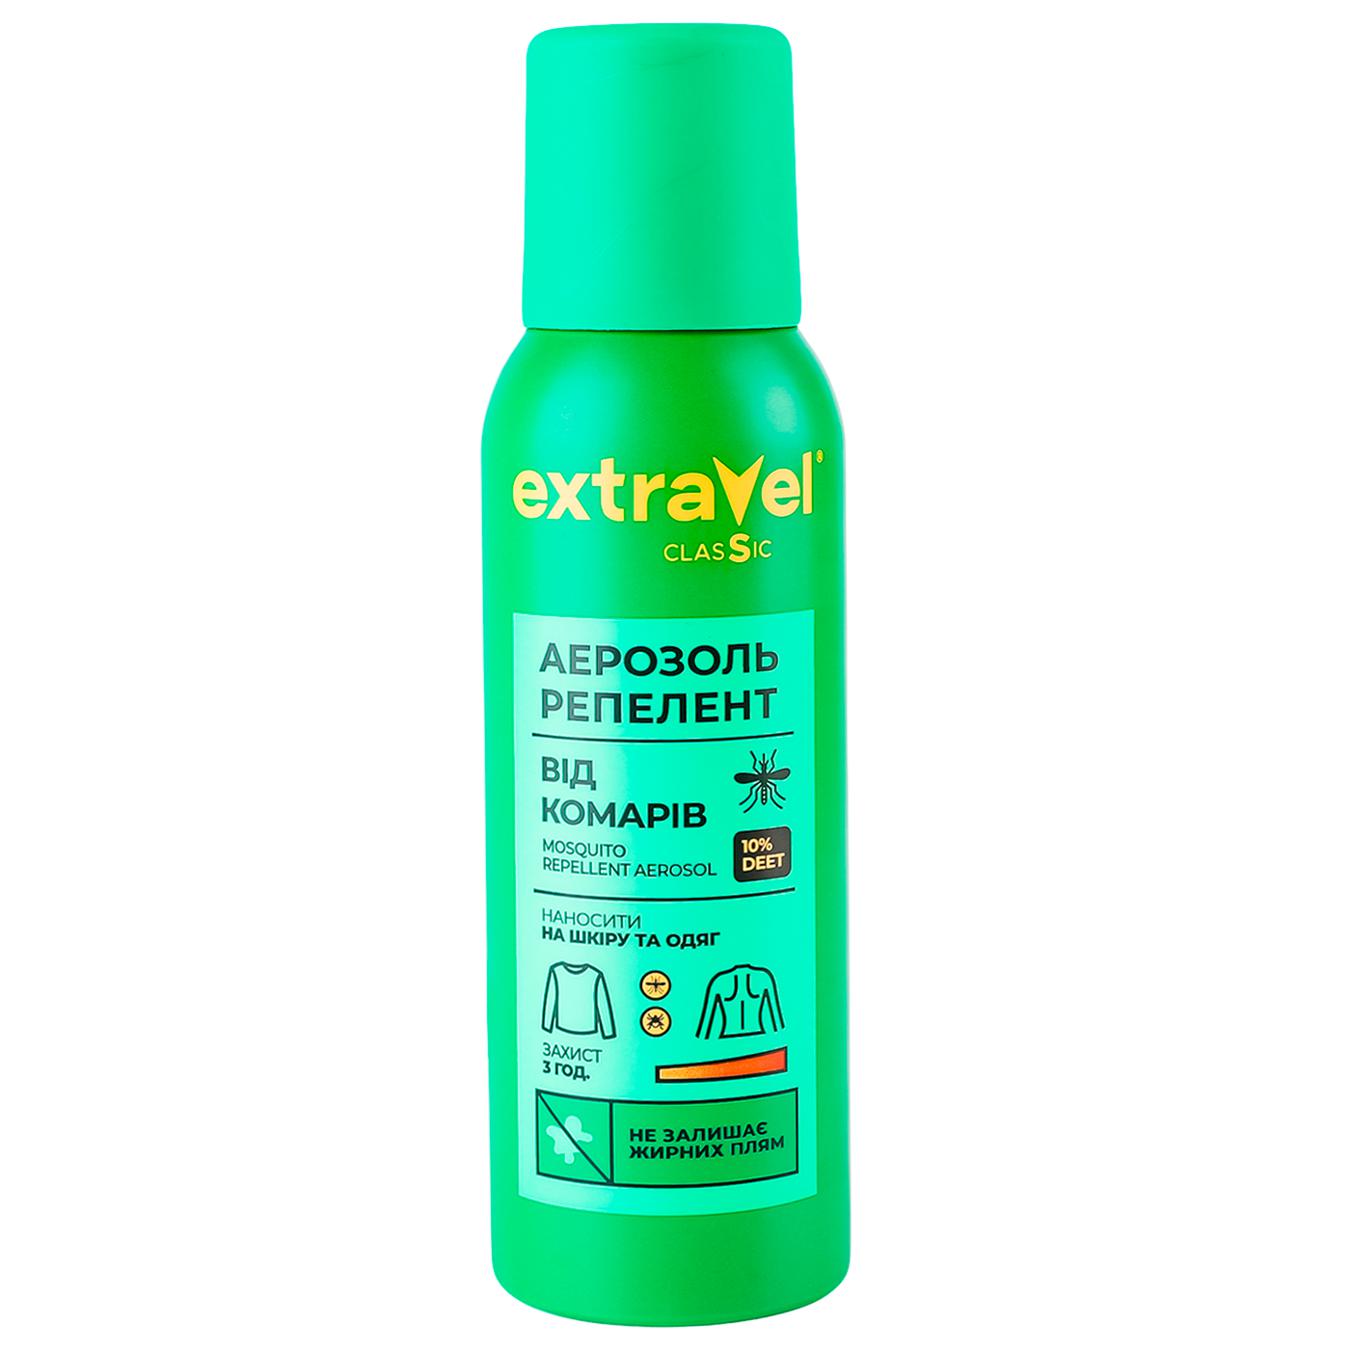 Extravel Classic mosquito repellent aerosol 100 ml